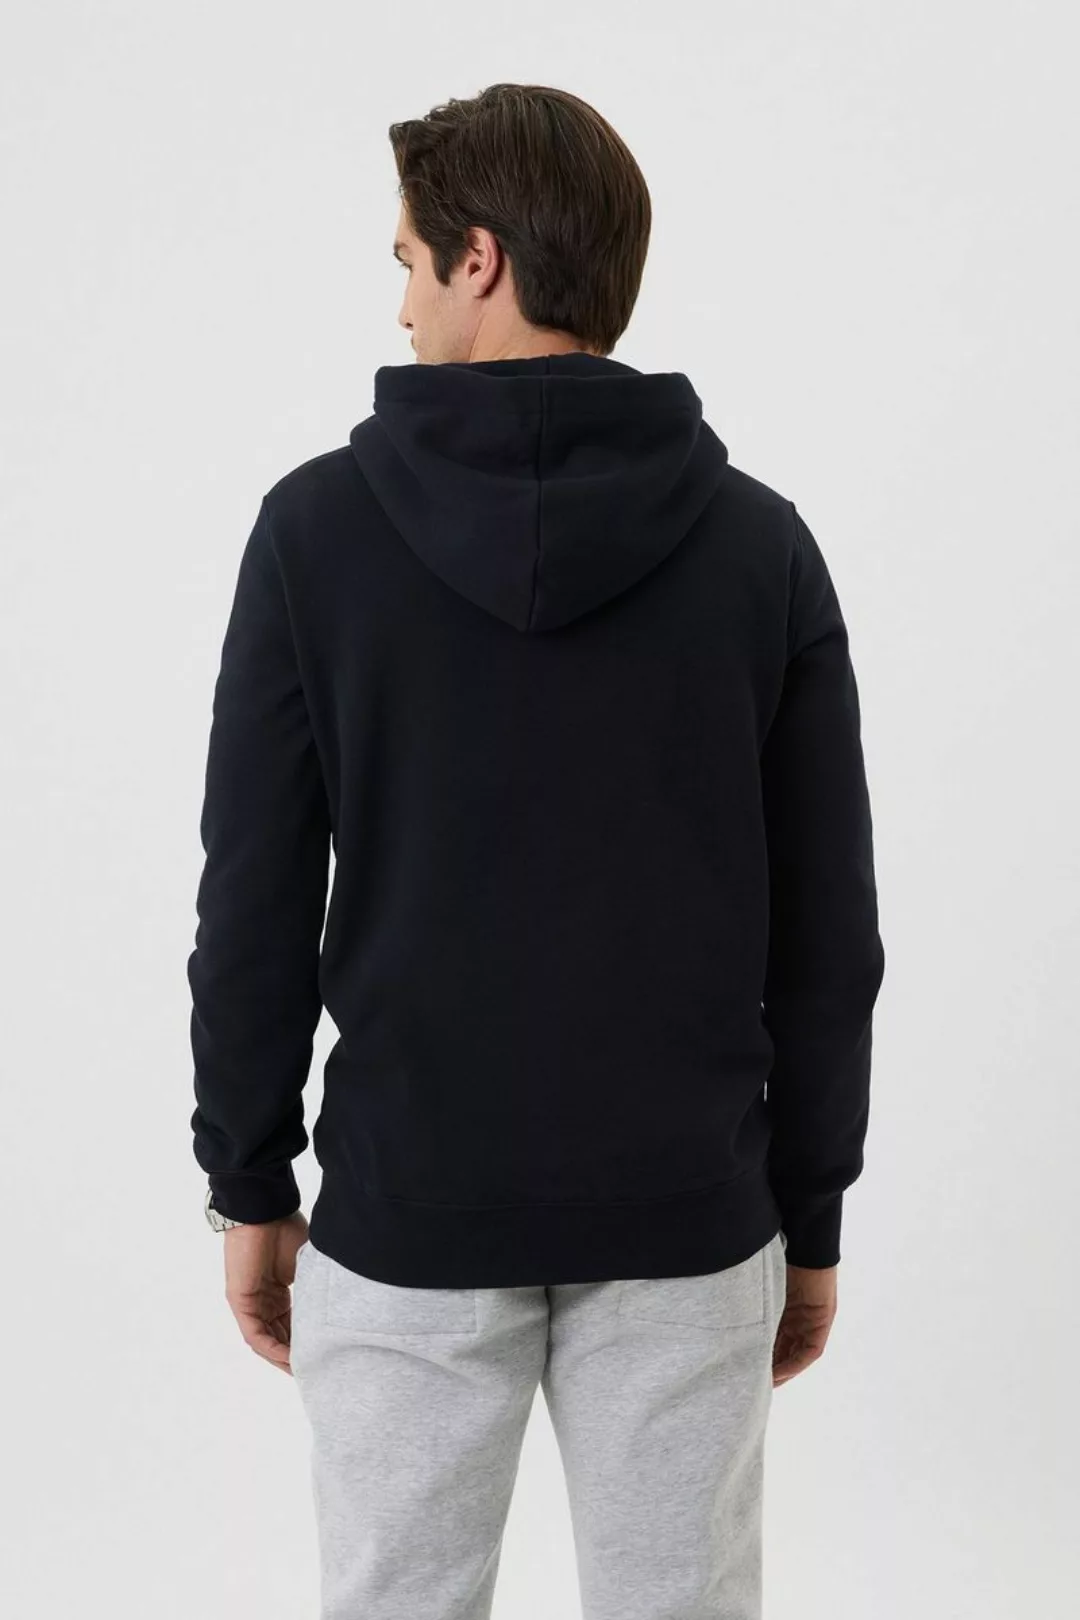 Bjorn Borg Centre Hoodie Jacket Schwarz - Größe XXL günstig online kaufen